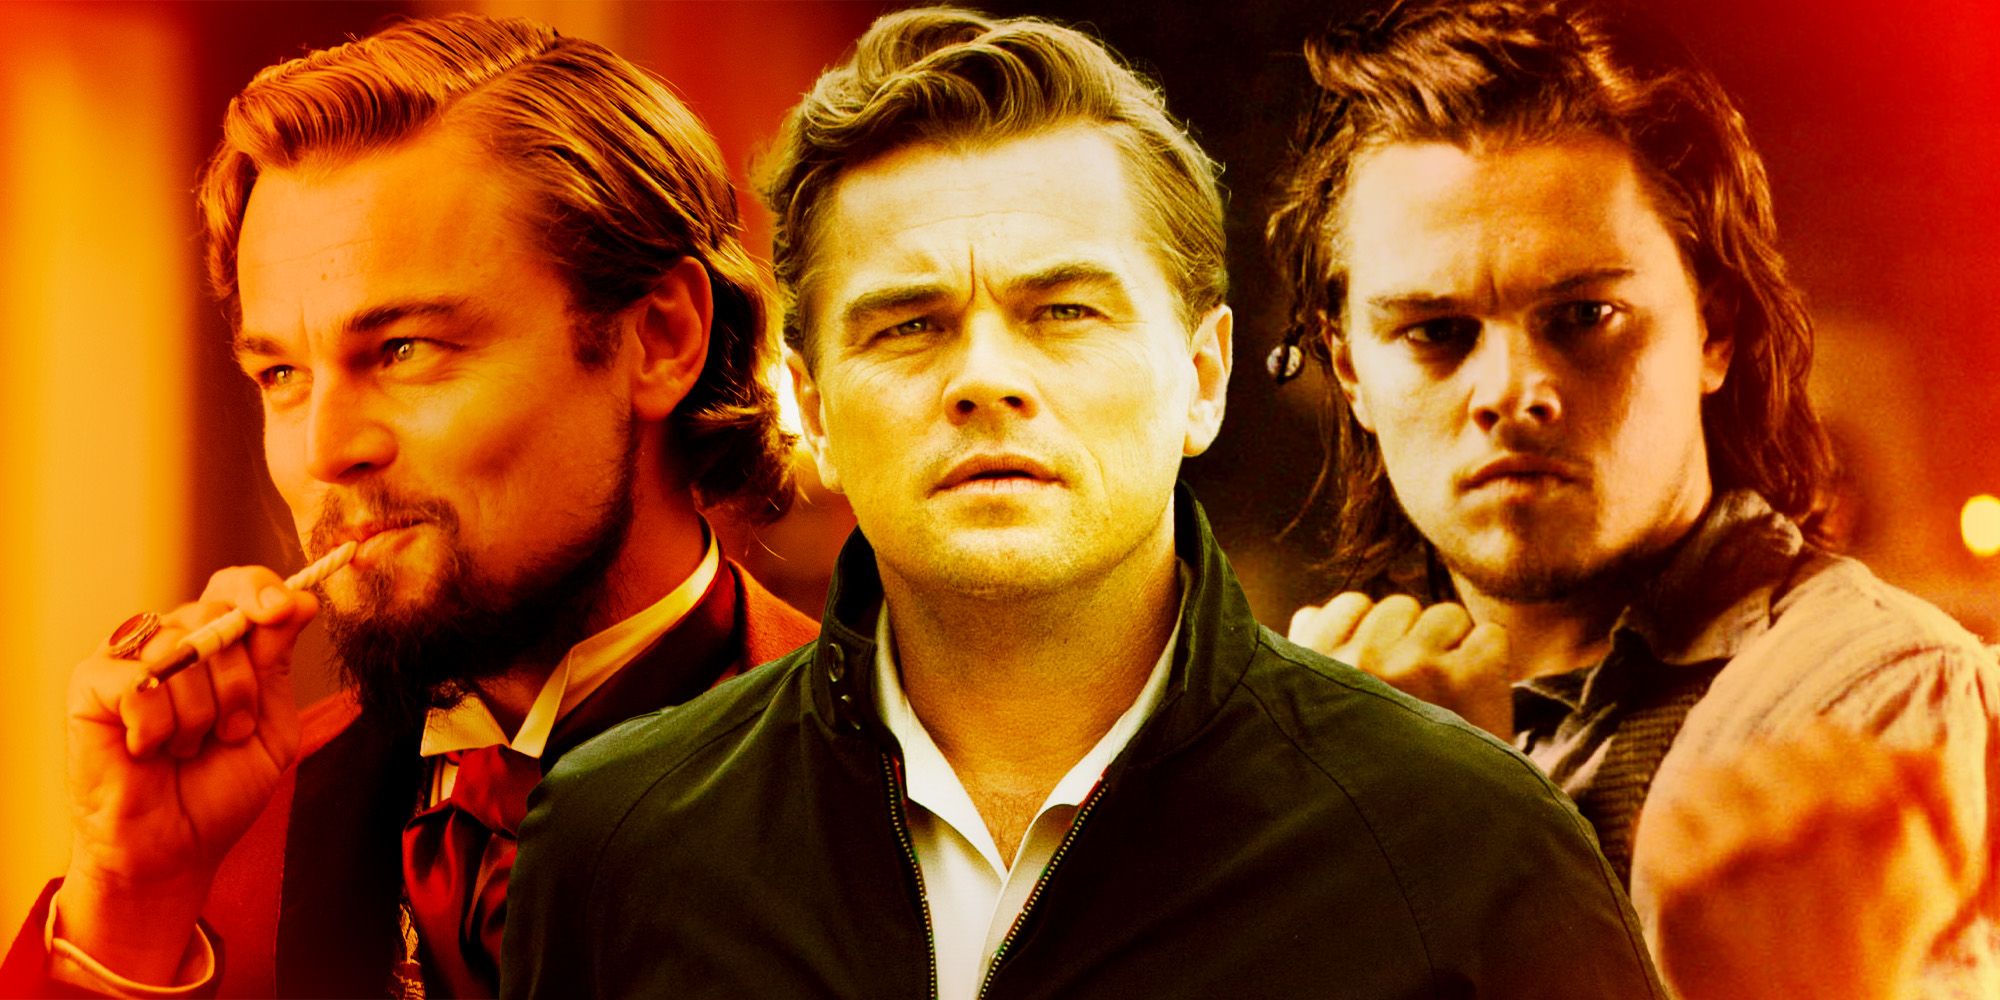 Leonardo DiCaprio in numerous film roles.